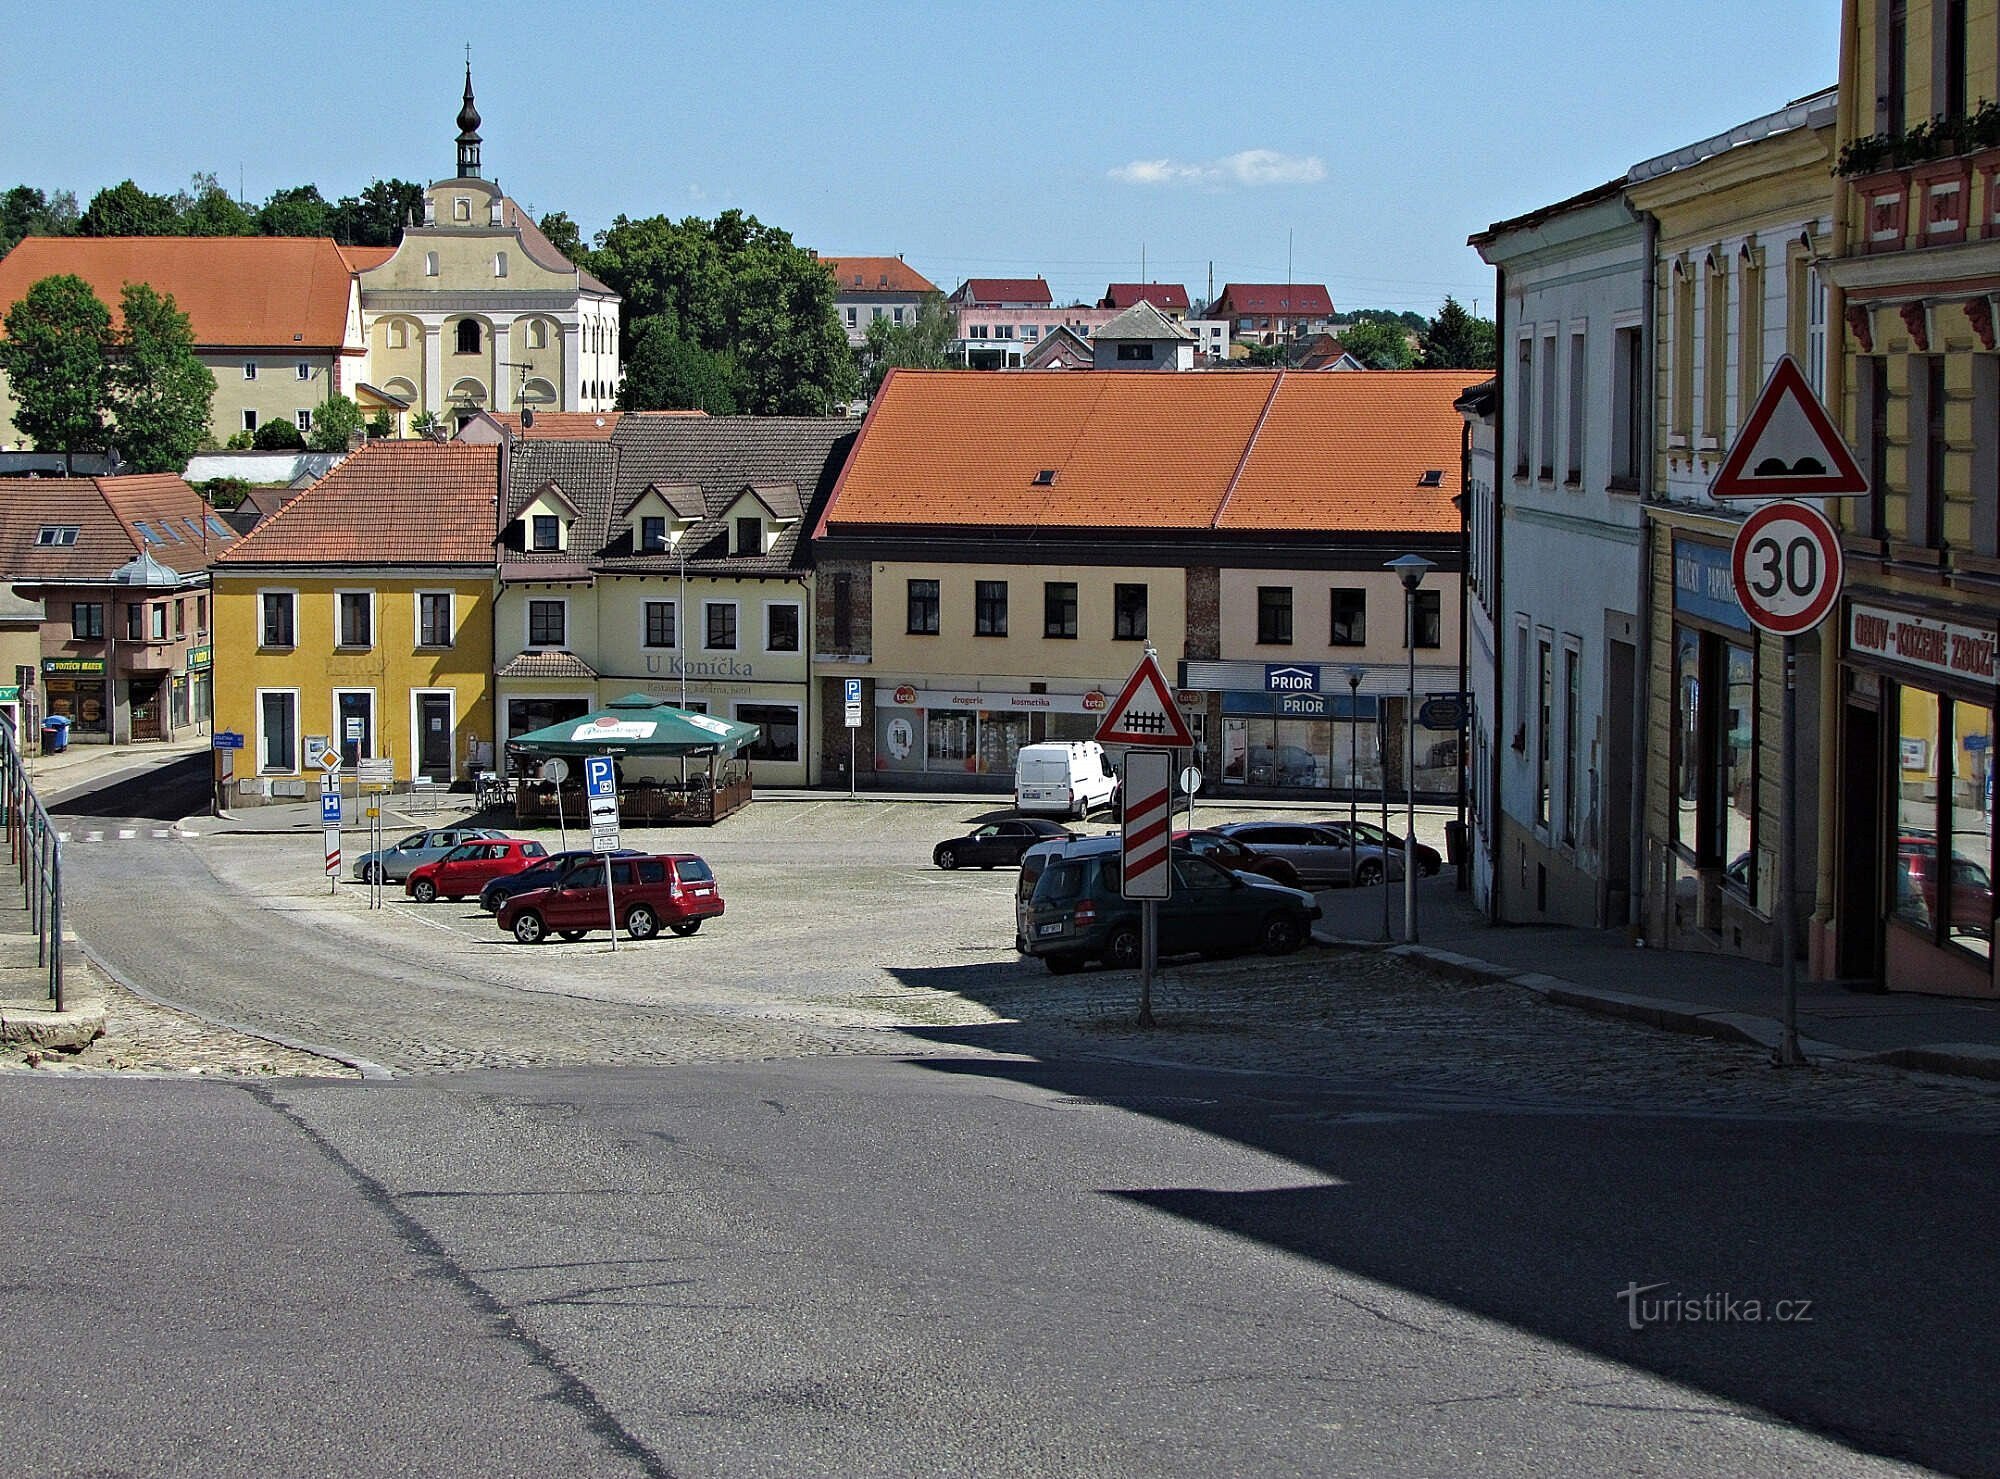 vista da igreja e mosteiro da Praça Palacké